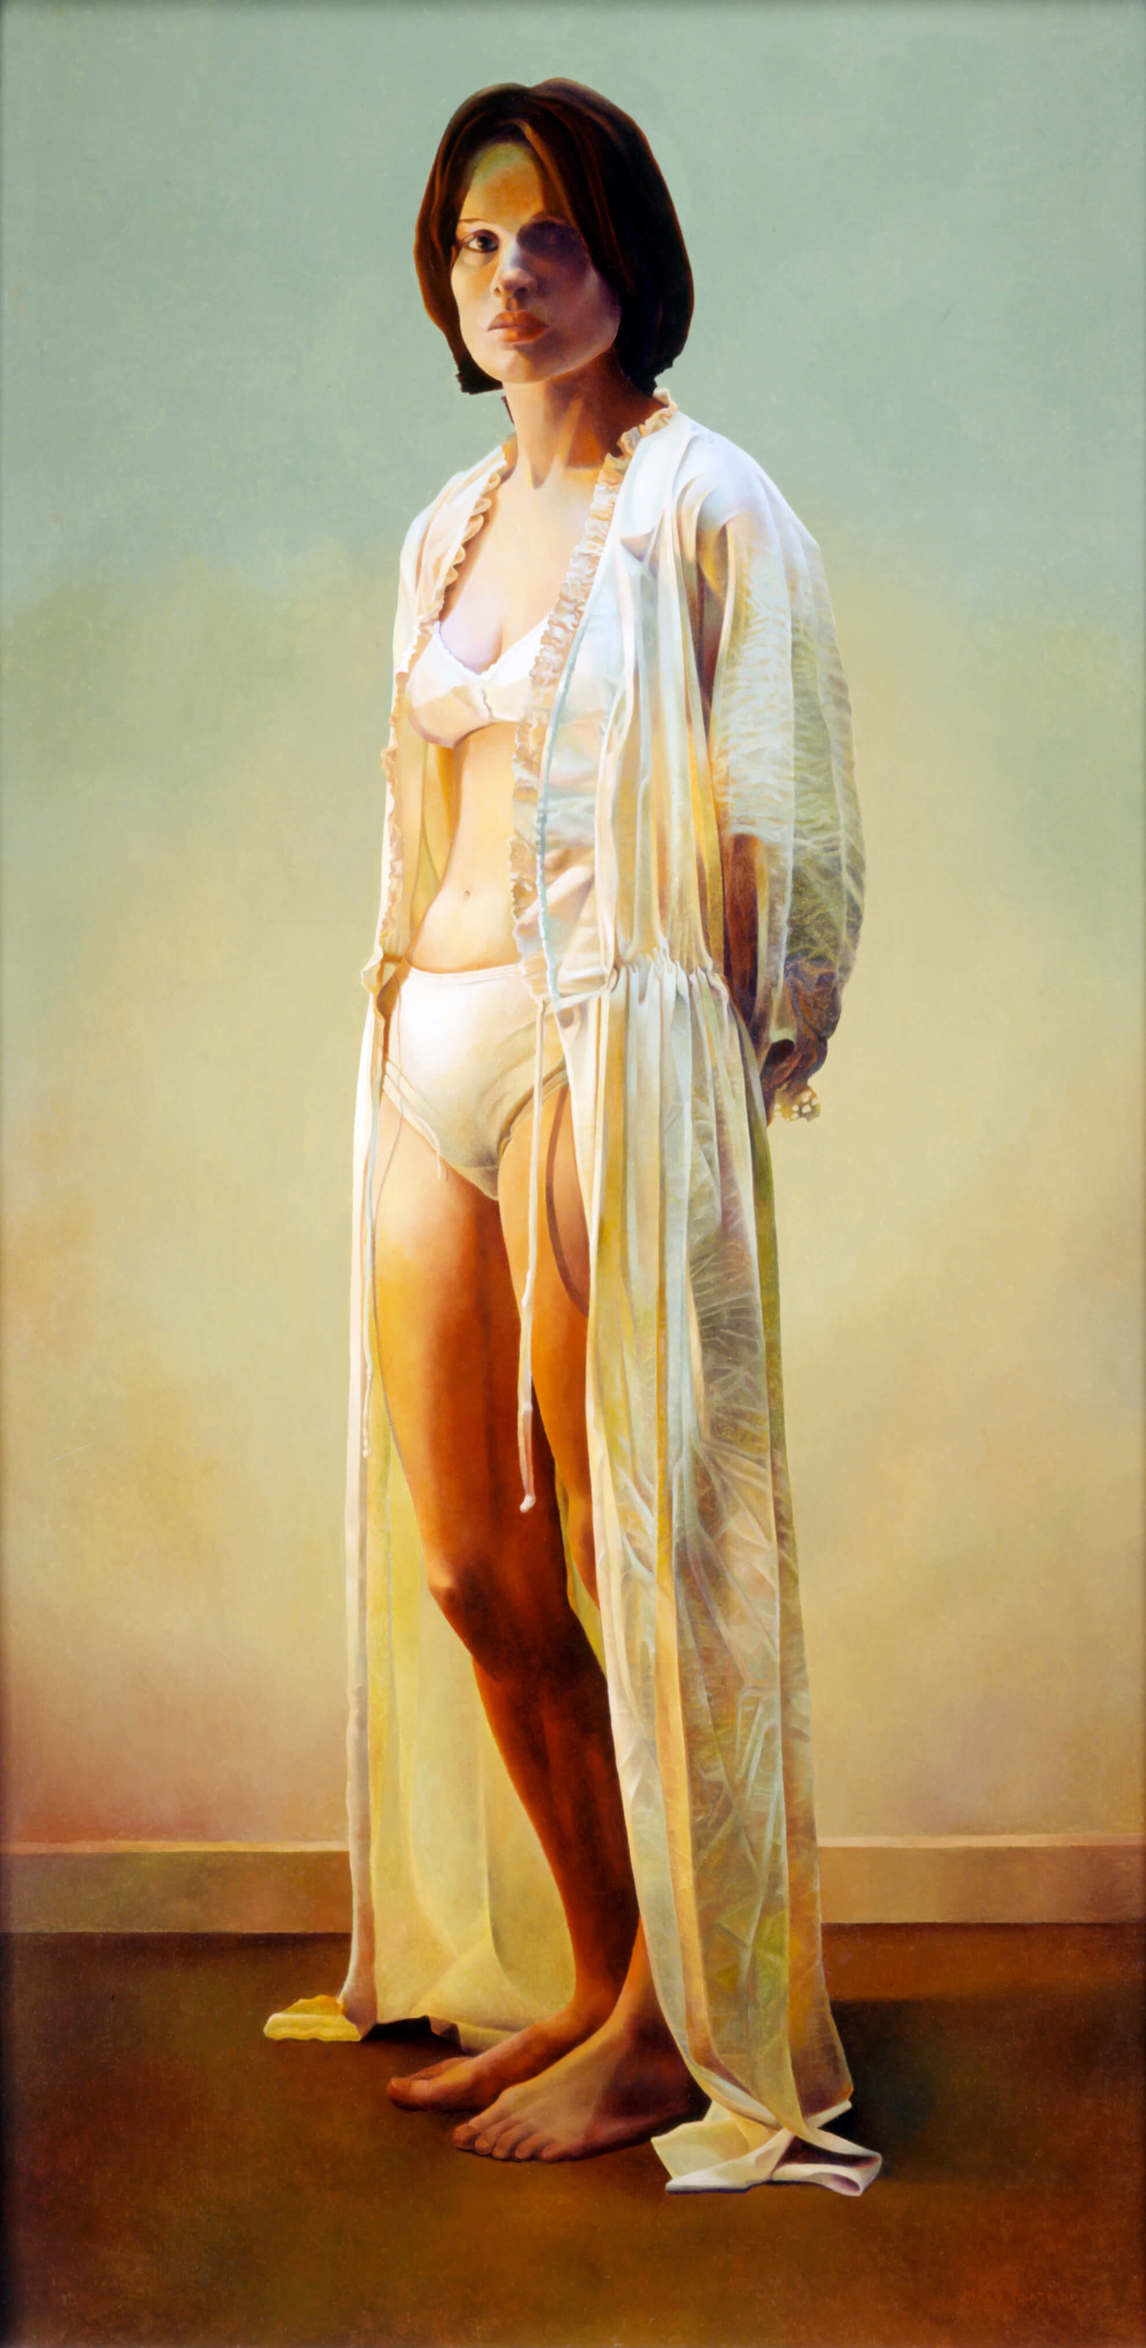 Mary Pratt, Girl in my Dressing Gown (Fille dans mon peignoir), 1981